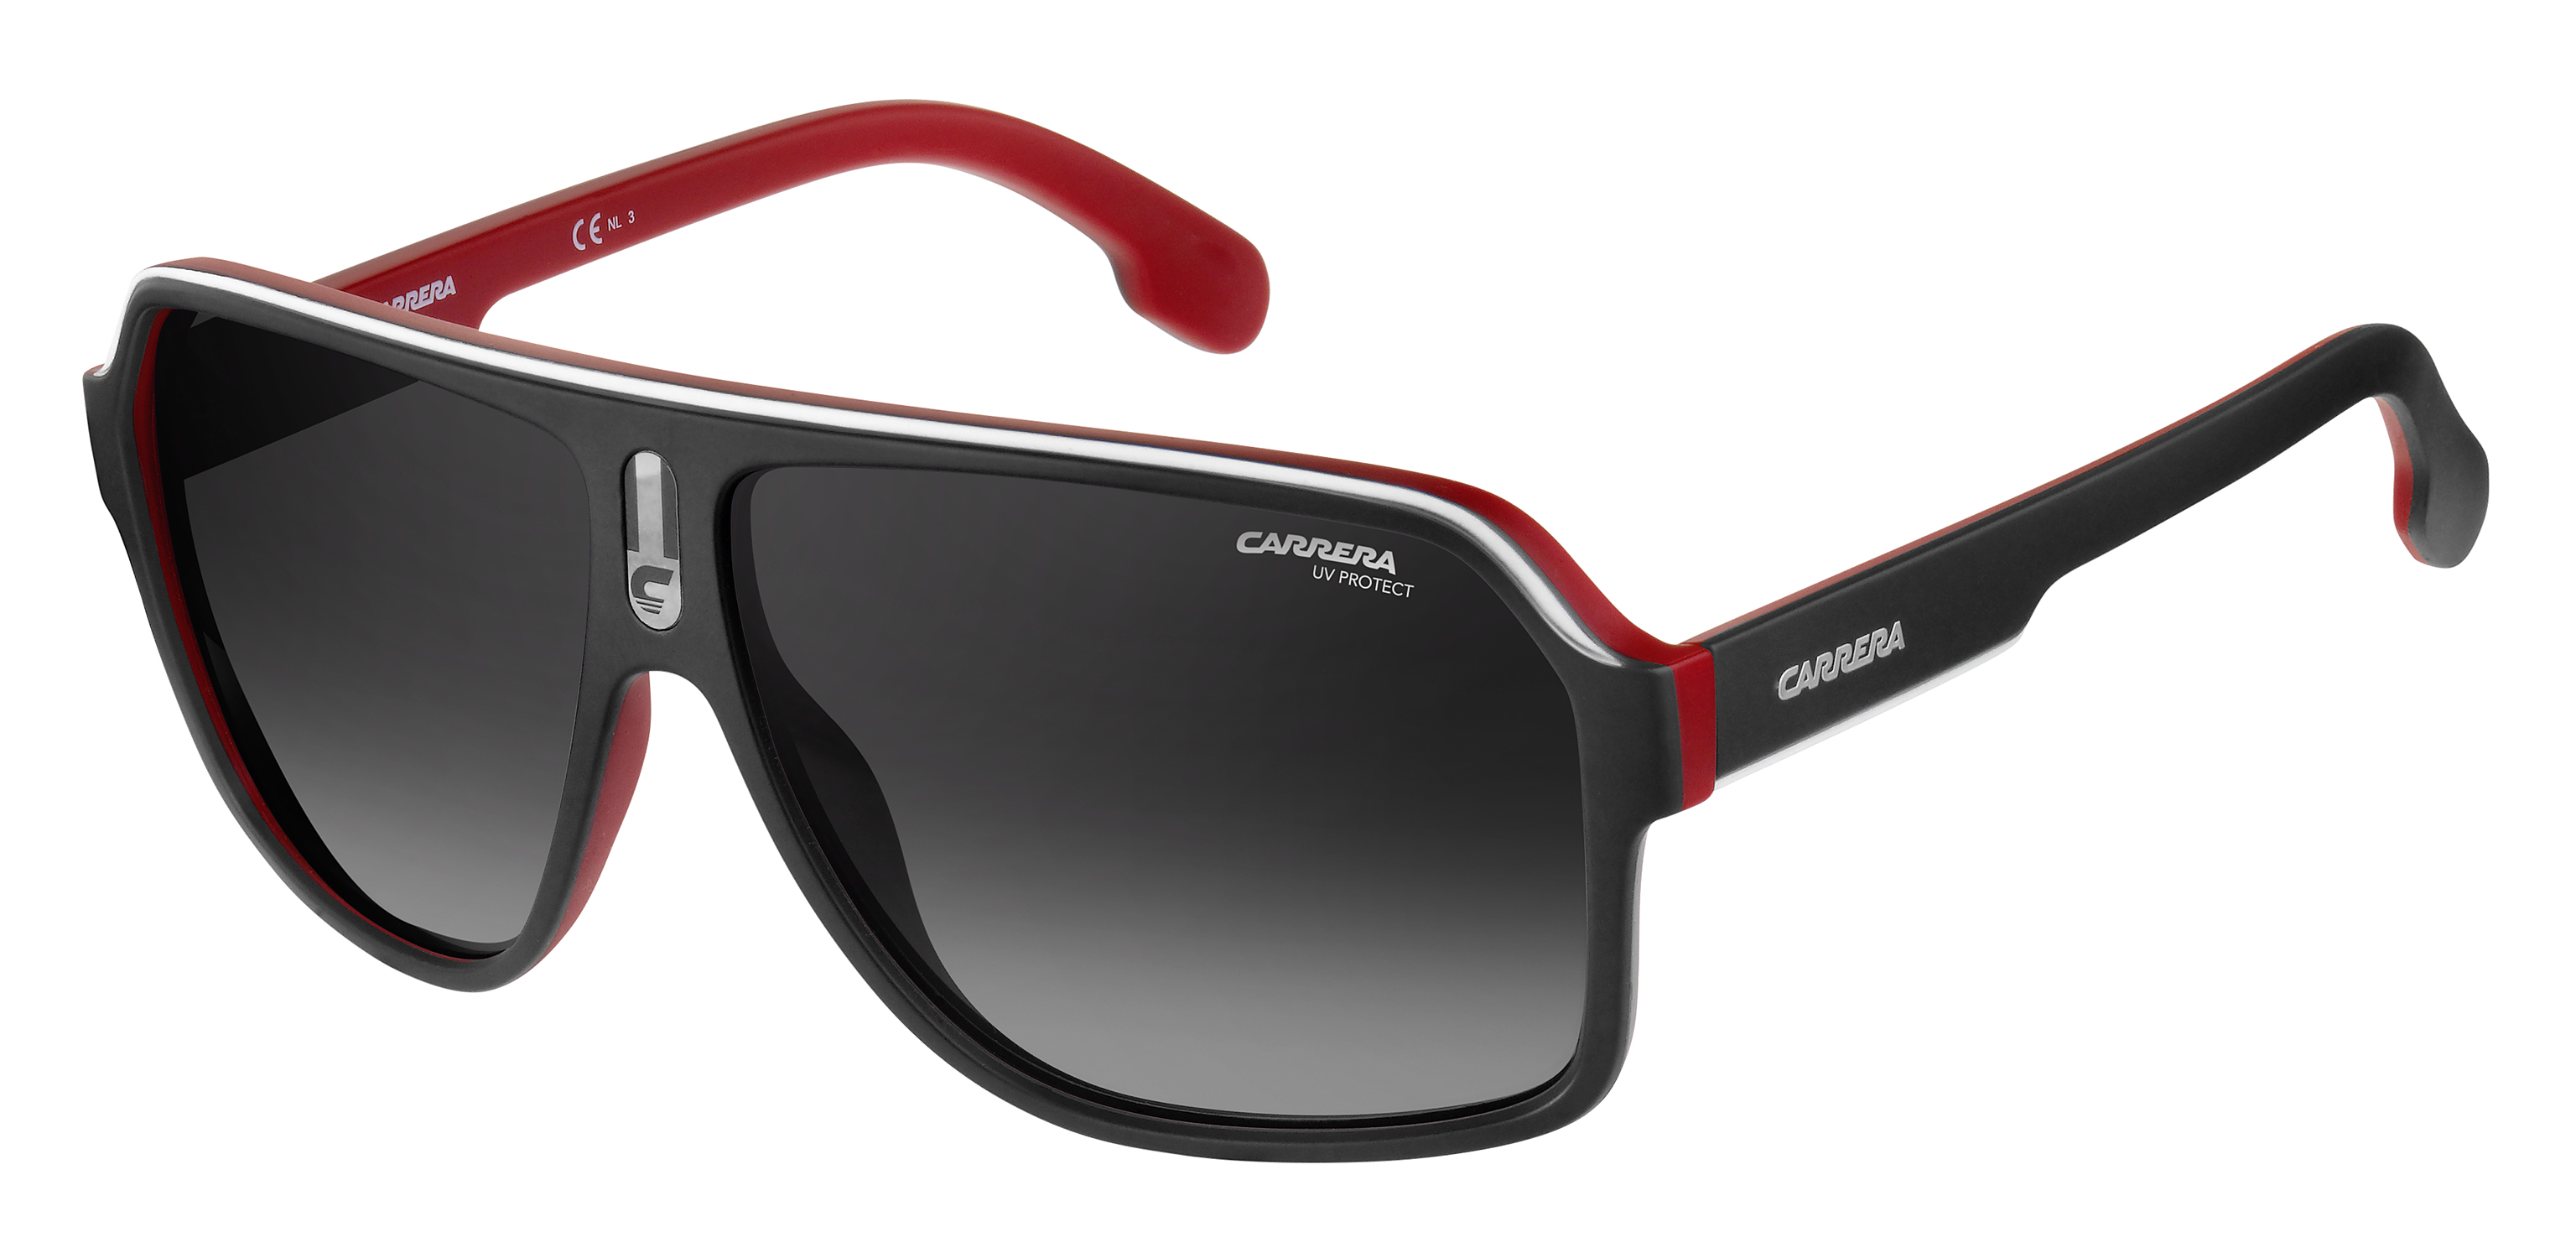 Купить очки солнцезащитные мужские брендовые 204527285. Carrera очки 1052/s. Carrera 1003 / s¡ New,. Очки Carrera мужские солнцезащитные. Очки Carrera 005/s.